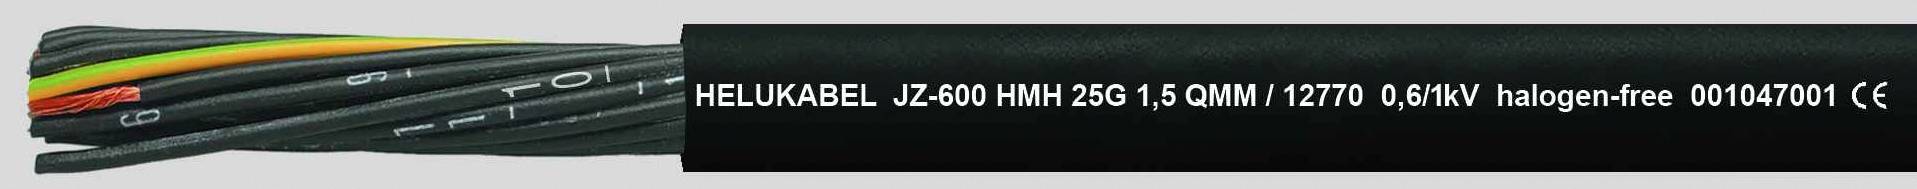 HELUKABEL JZ-600 HMH Steuerleitung 3 G 0.75 mm² Schwarz 12736-500 500 m